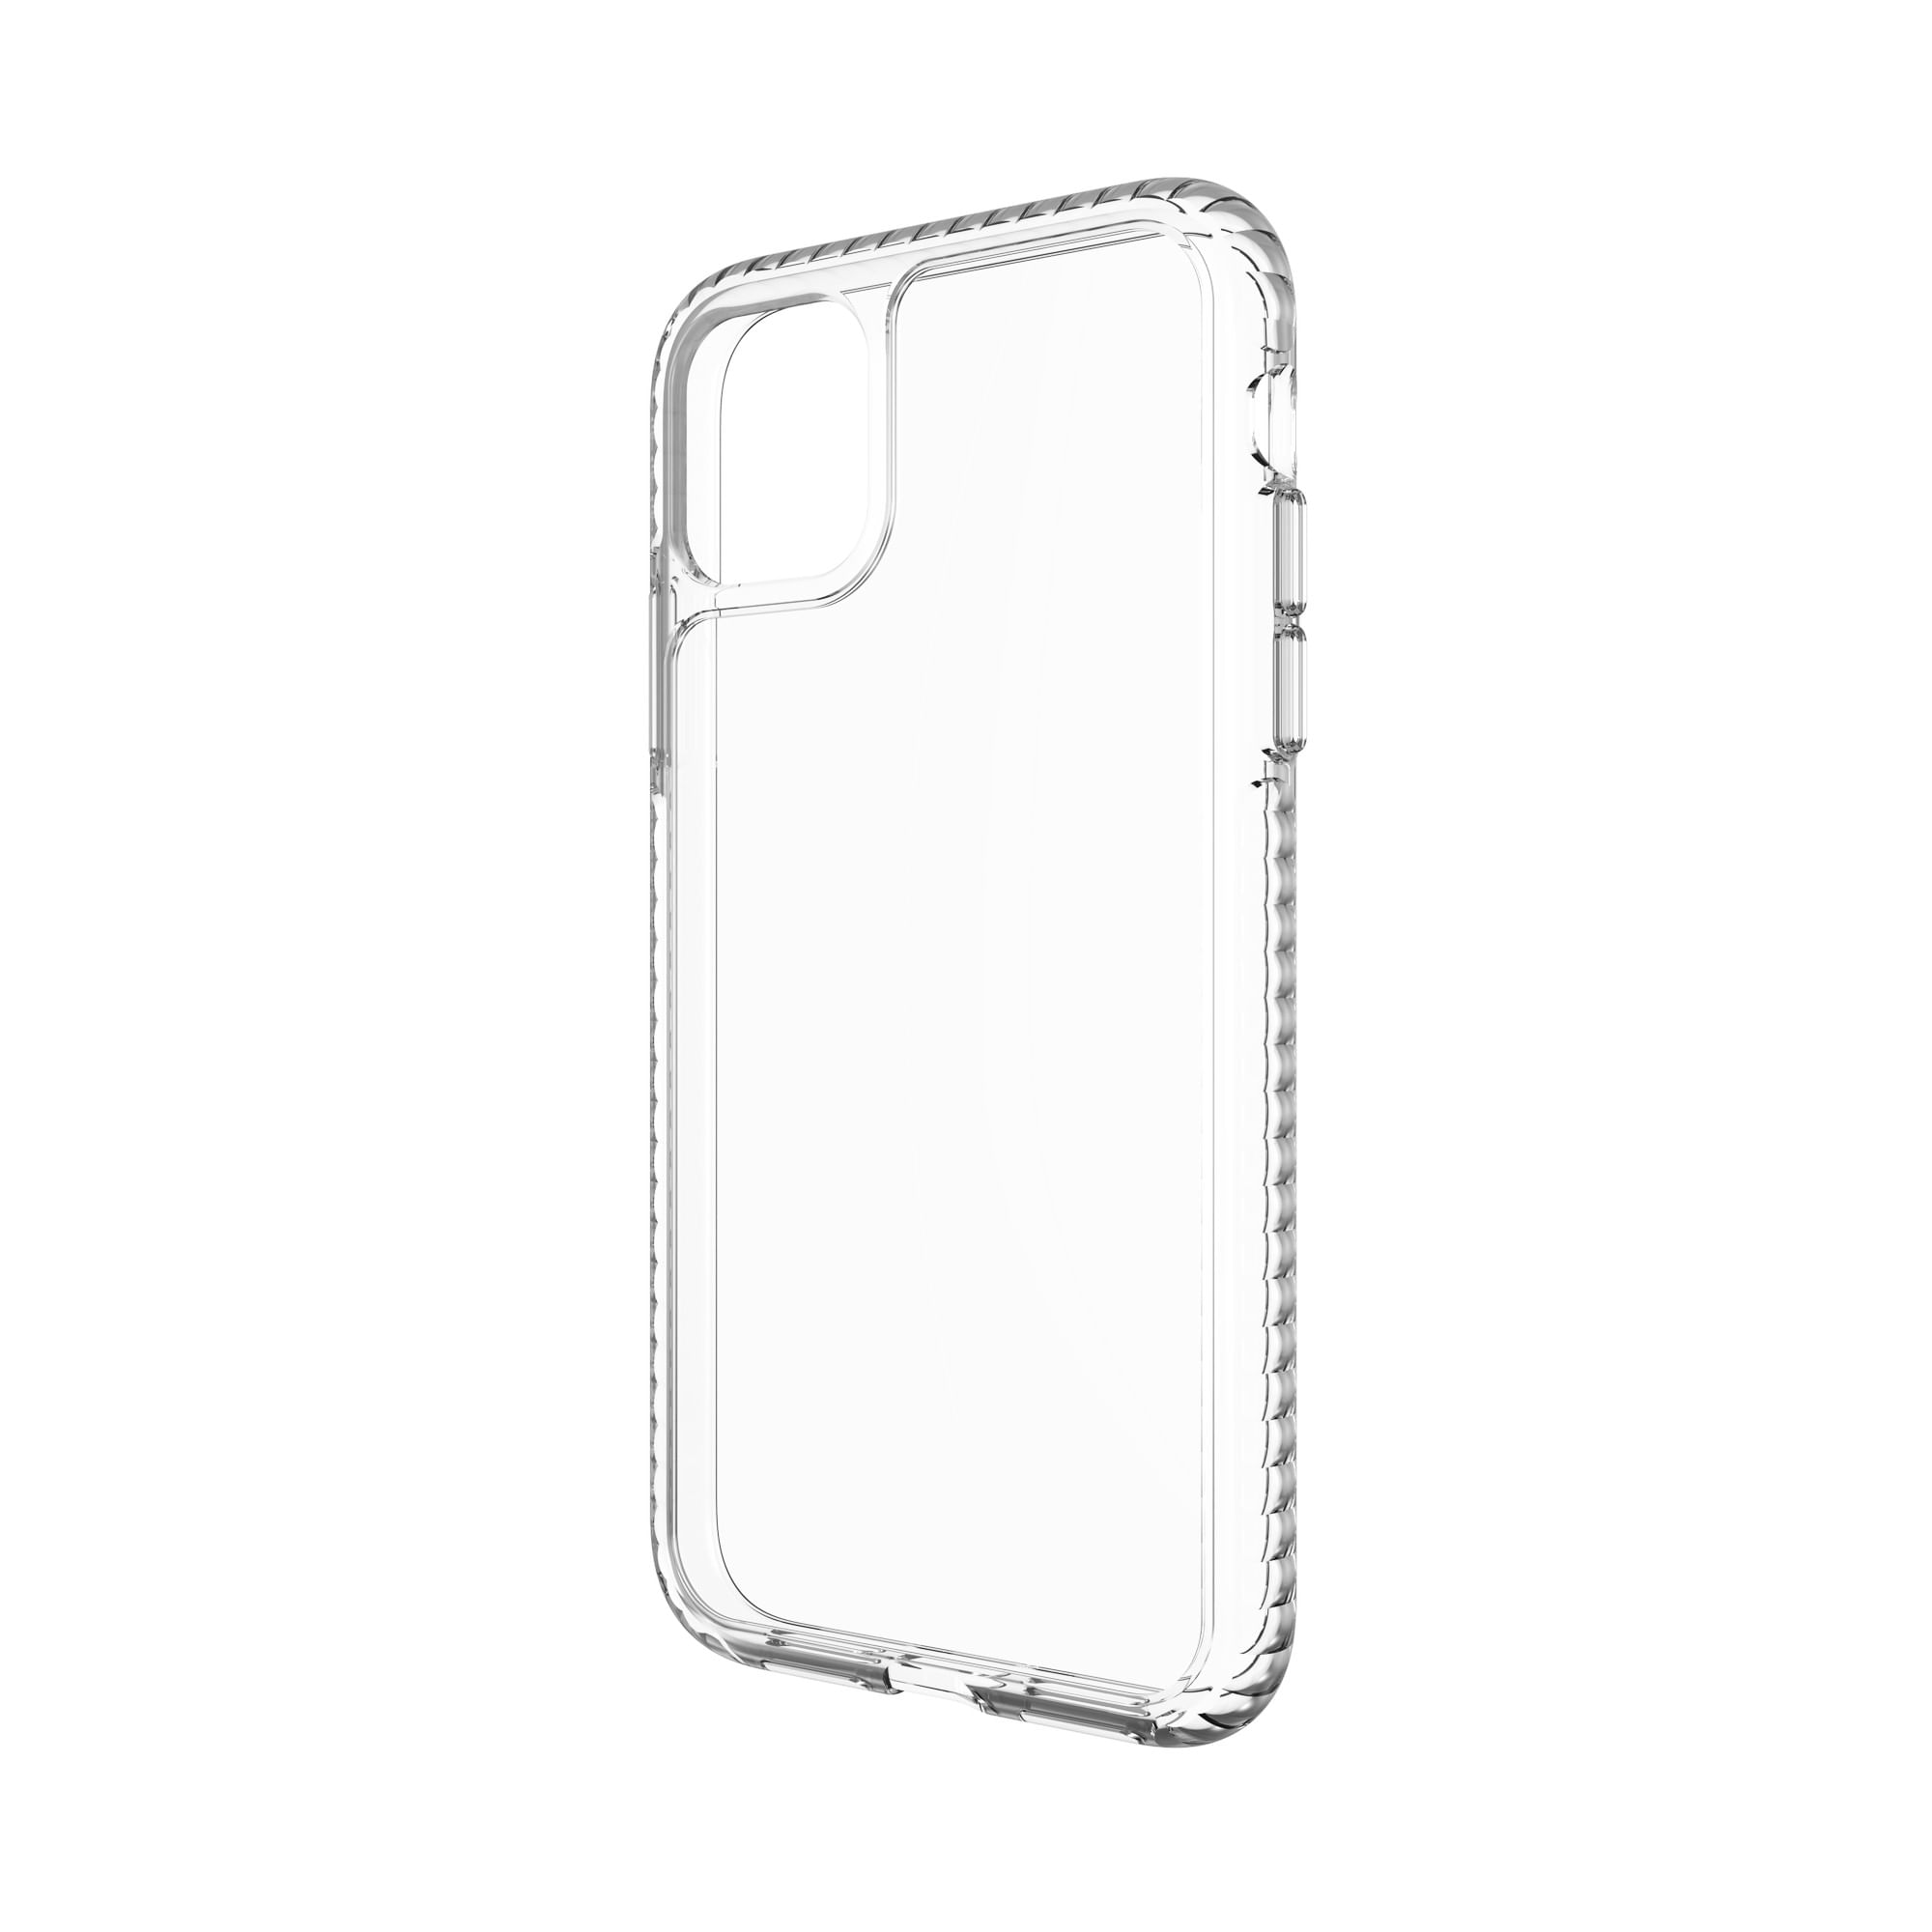 Case y Mica Protectora Max Protection 360 para iPhone 11 - Transparente